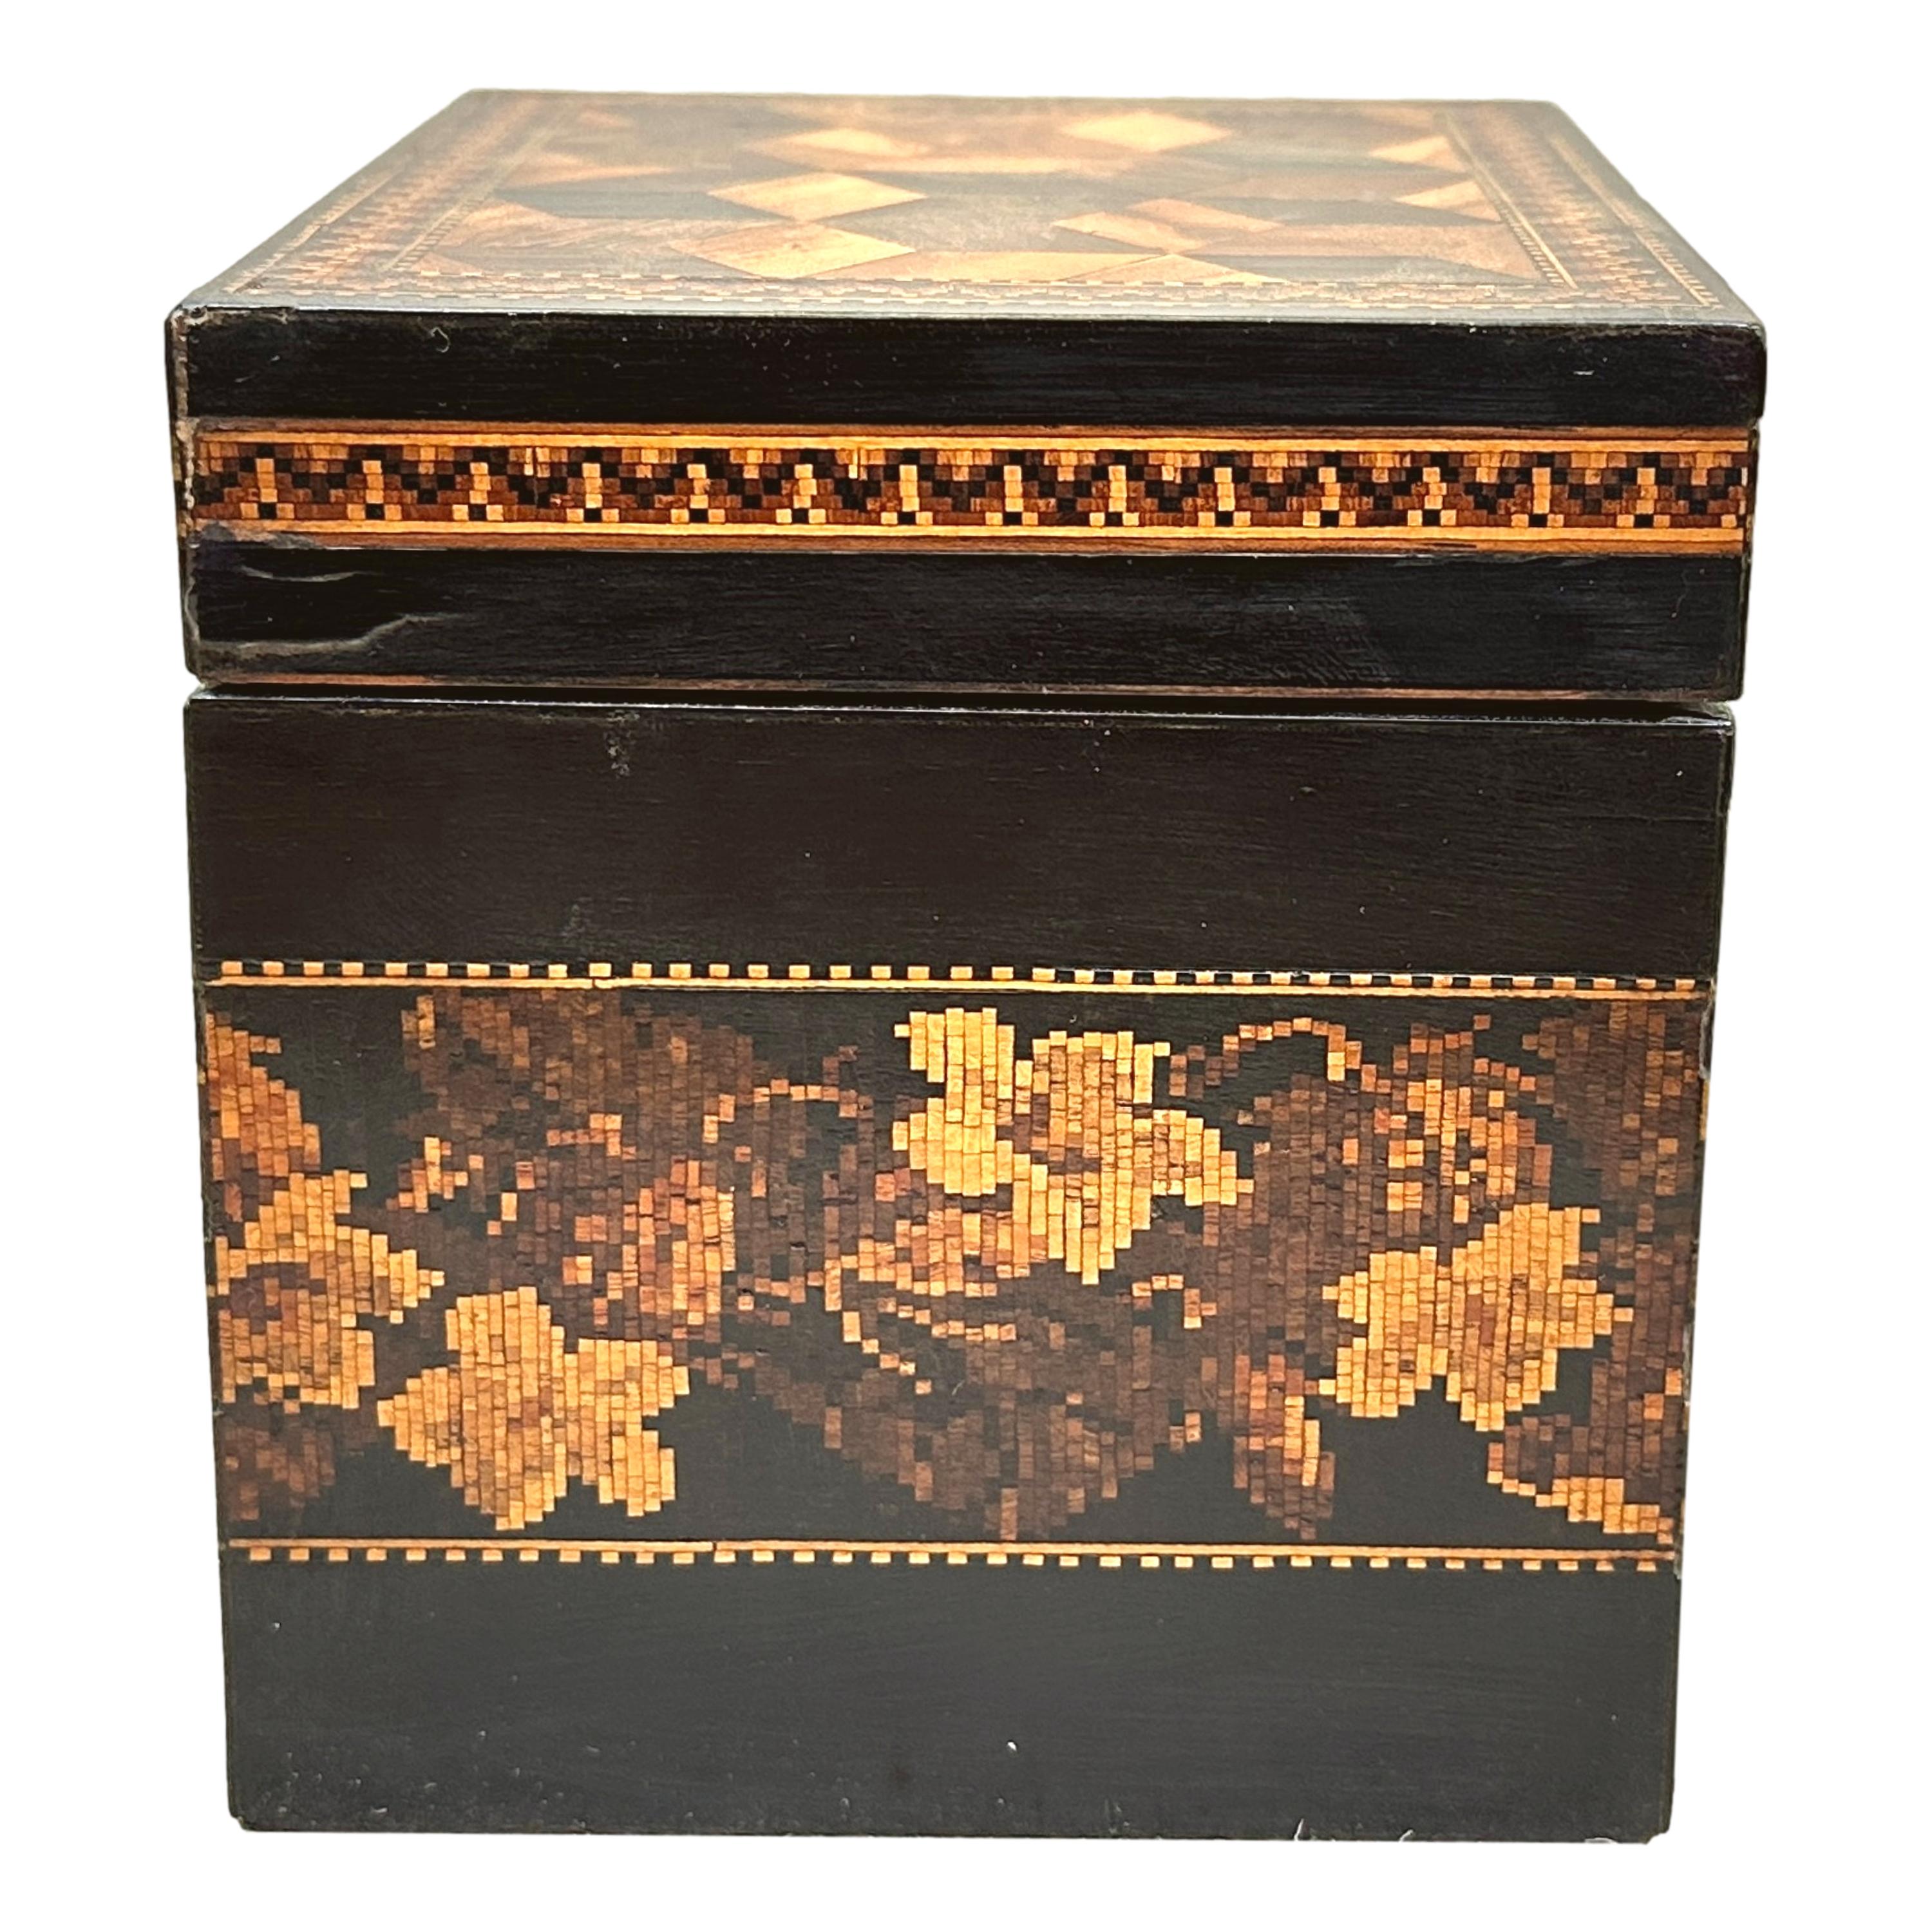 Eine charmante 19. Jahrhundert Tunbridge Ware Tea Caddy mit attraktiven floralen Band zum Hauptkörper und Parkett Perspektive Würfel auf Scharnierdeckel umschließt Lidded Interieur.


Im Laufe des 18. und 19. Jahrhunderts war Tee ein äußerst